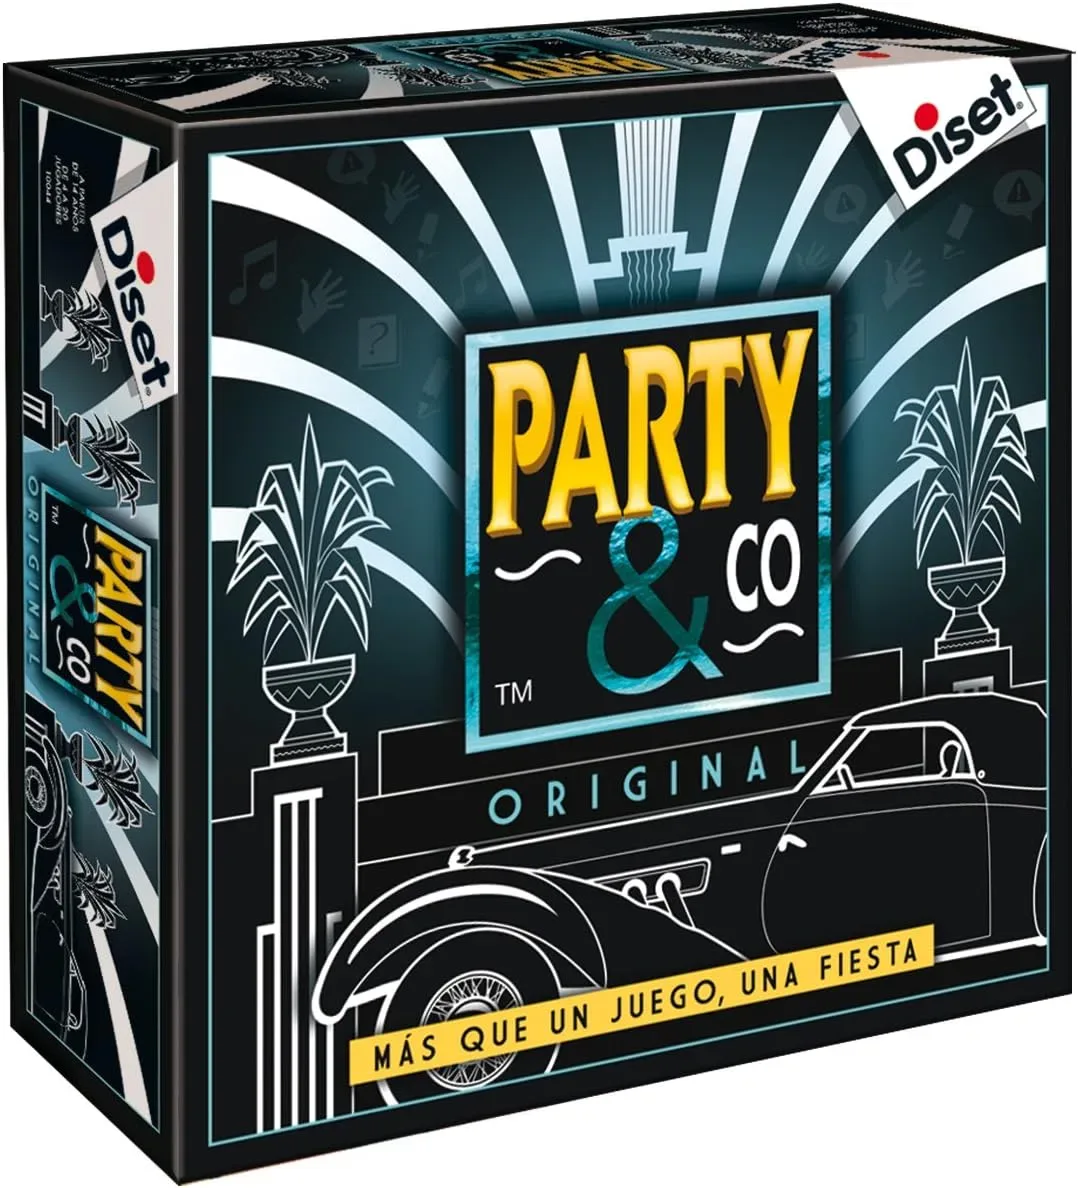 Ver categoría de party & co original